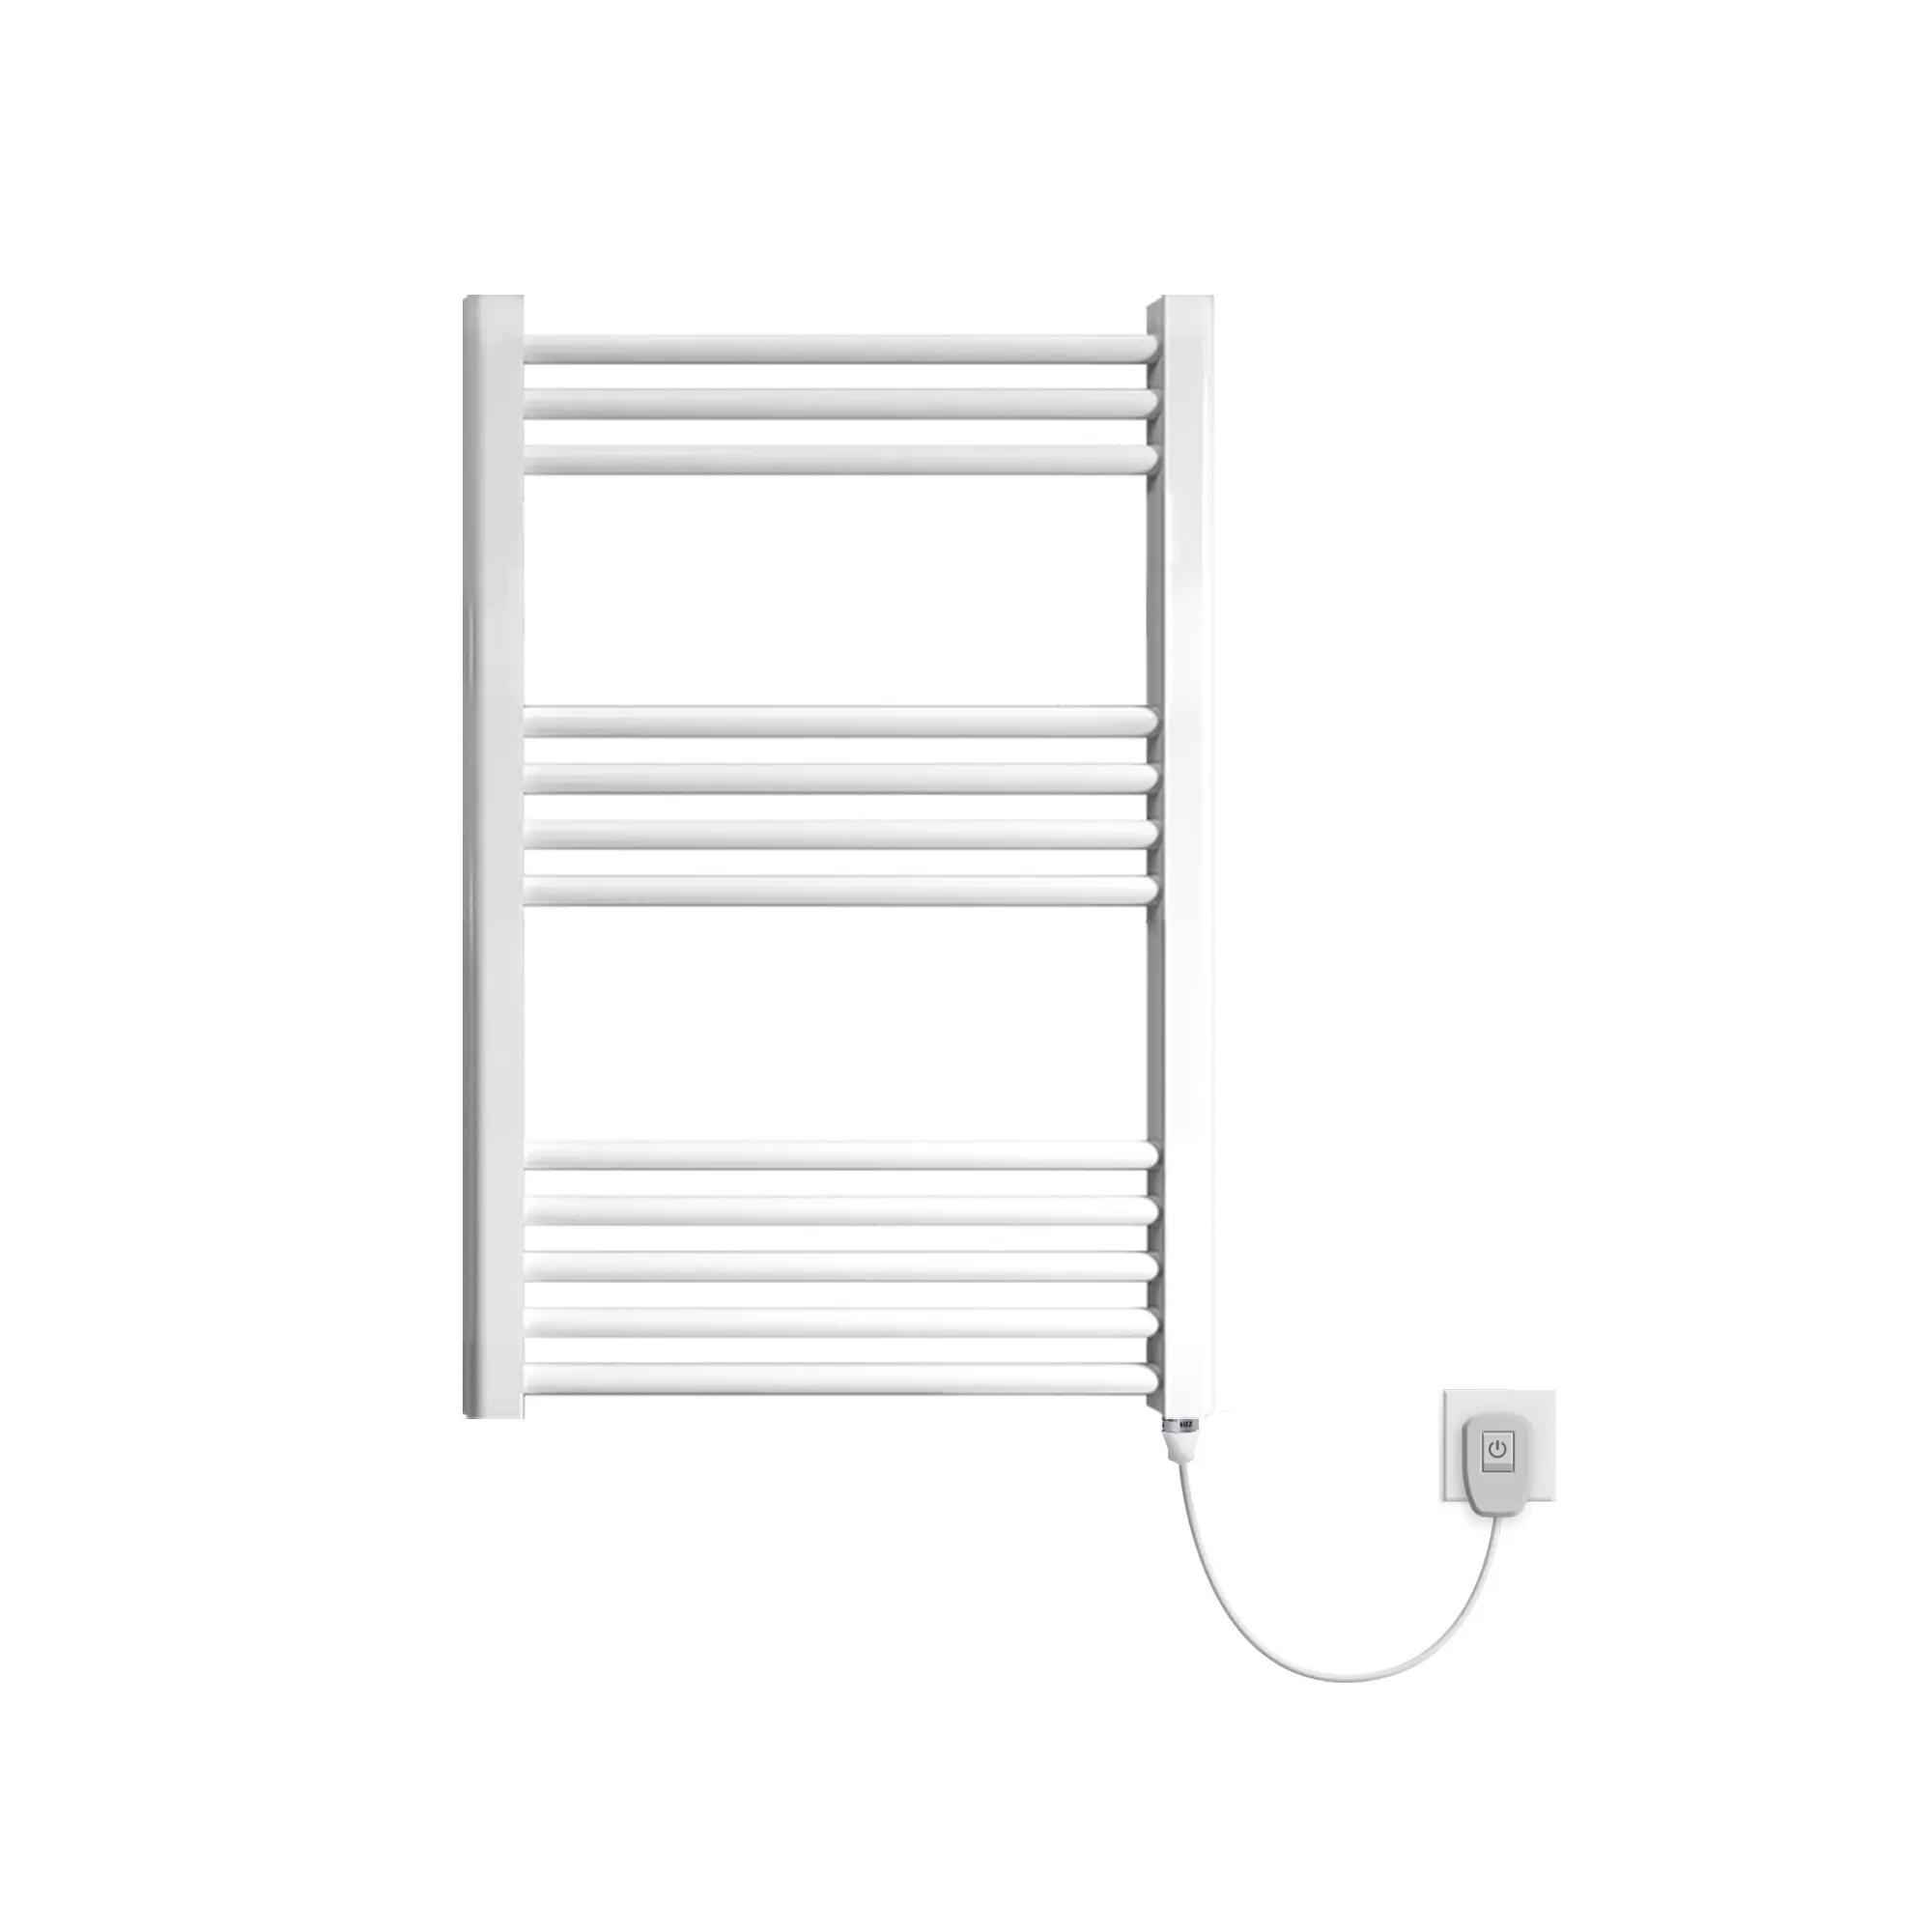 Radiadores toalleros eléctricos: modelos de bajo consumo - Tien21